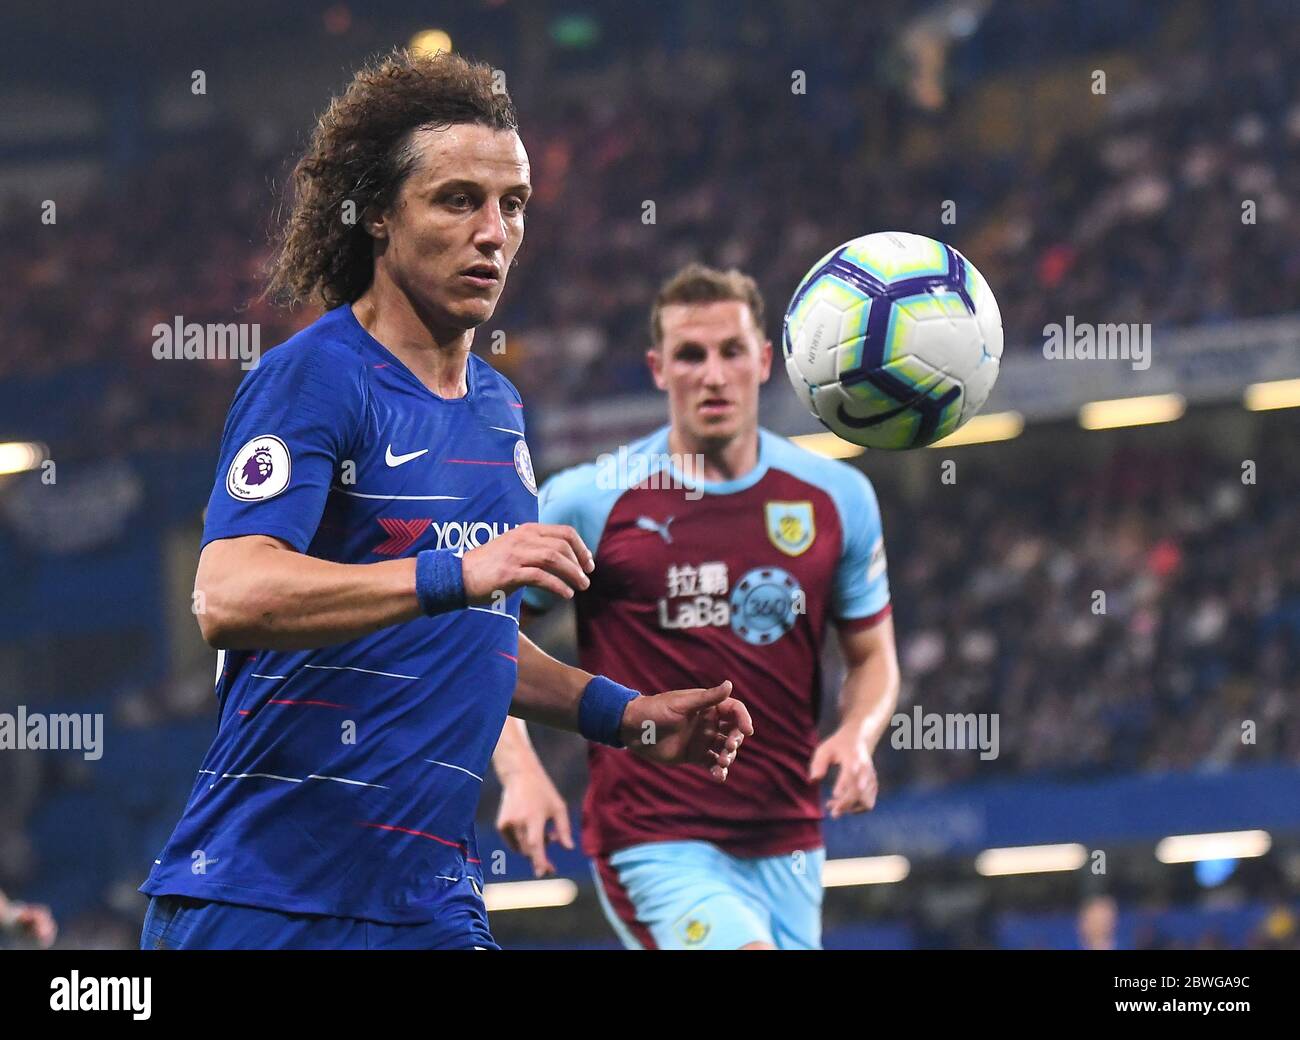 LONDRES, ANGLETERRE - 22 AVRIL 2019 : David Luiz de Chelsea photographié pendant le match de la Premier League 2018/19 entre le Chelsea FC et le Burnley FC à Stamford Bridge. Banque D'Images